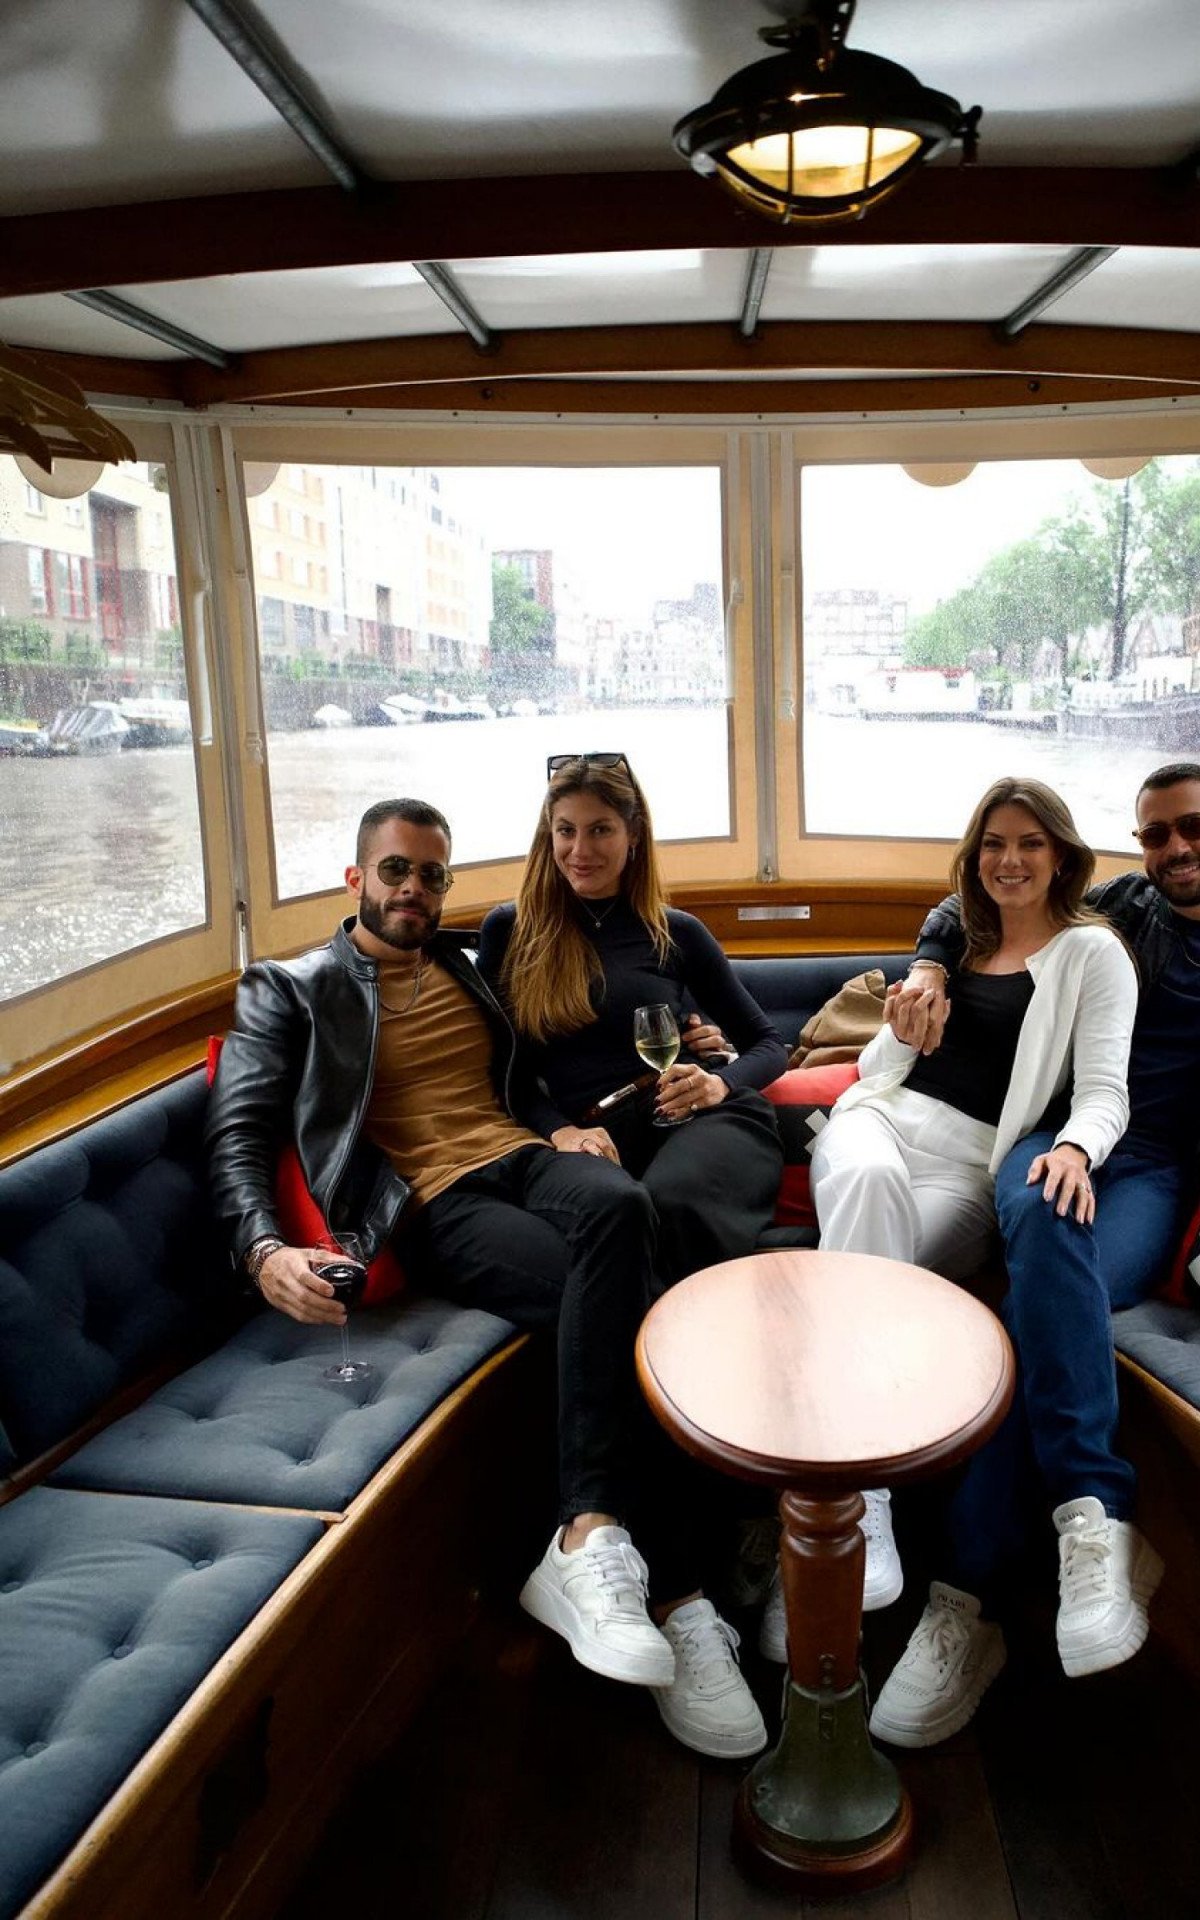 Assumidos? Mari Gonzalez posta fotos com Pipo Marques em Amsterdam | Celebridades